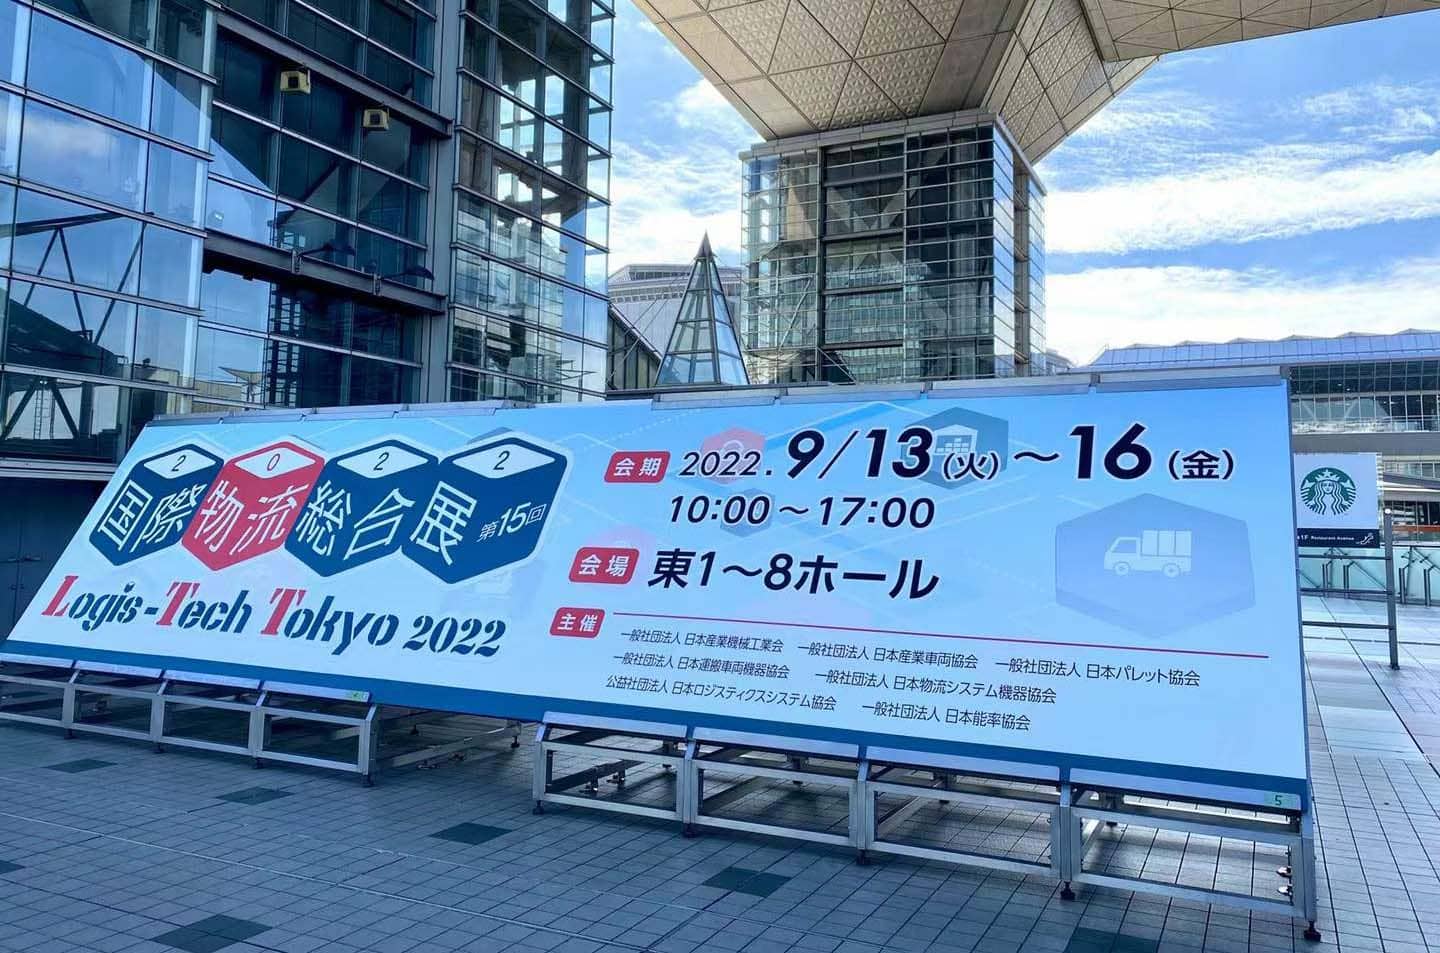 MIMA participa do hub de inovação do Logistics World 2022-LTT Tóquio